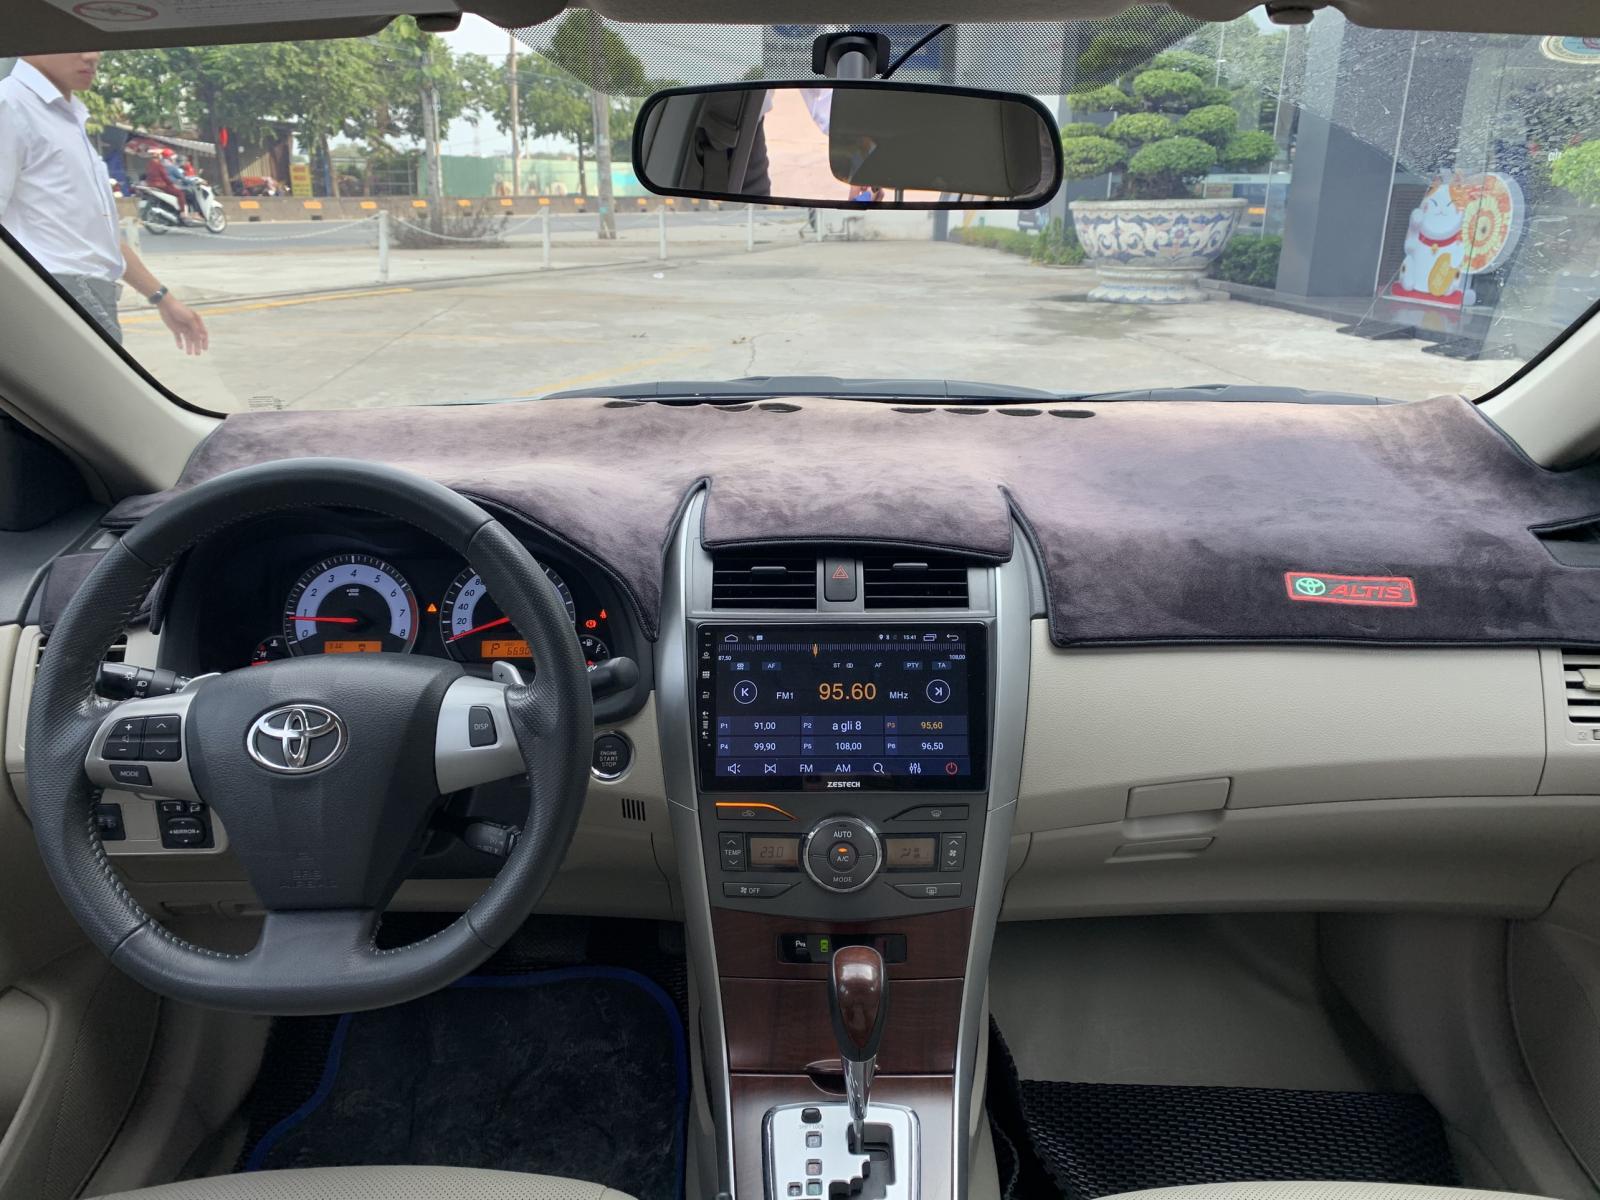 Toyota Corolla altis 2.0 2011 - Altis 2.0V 2011 xe đi rất ít, phụ kiện chất lượng